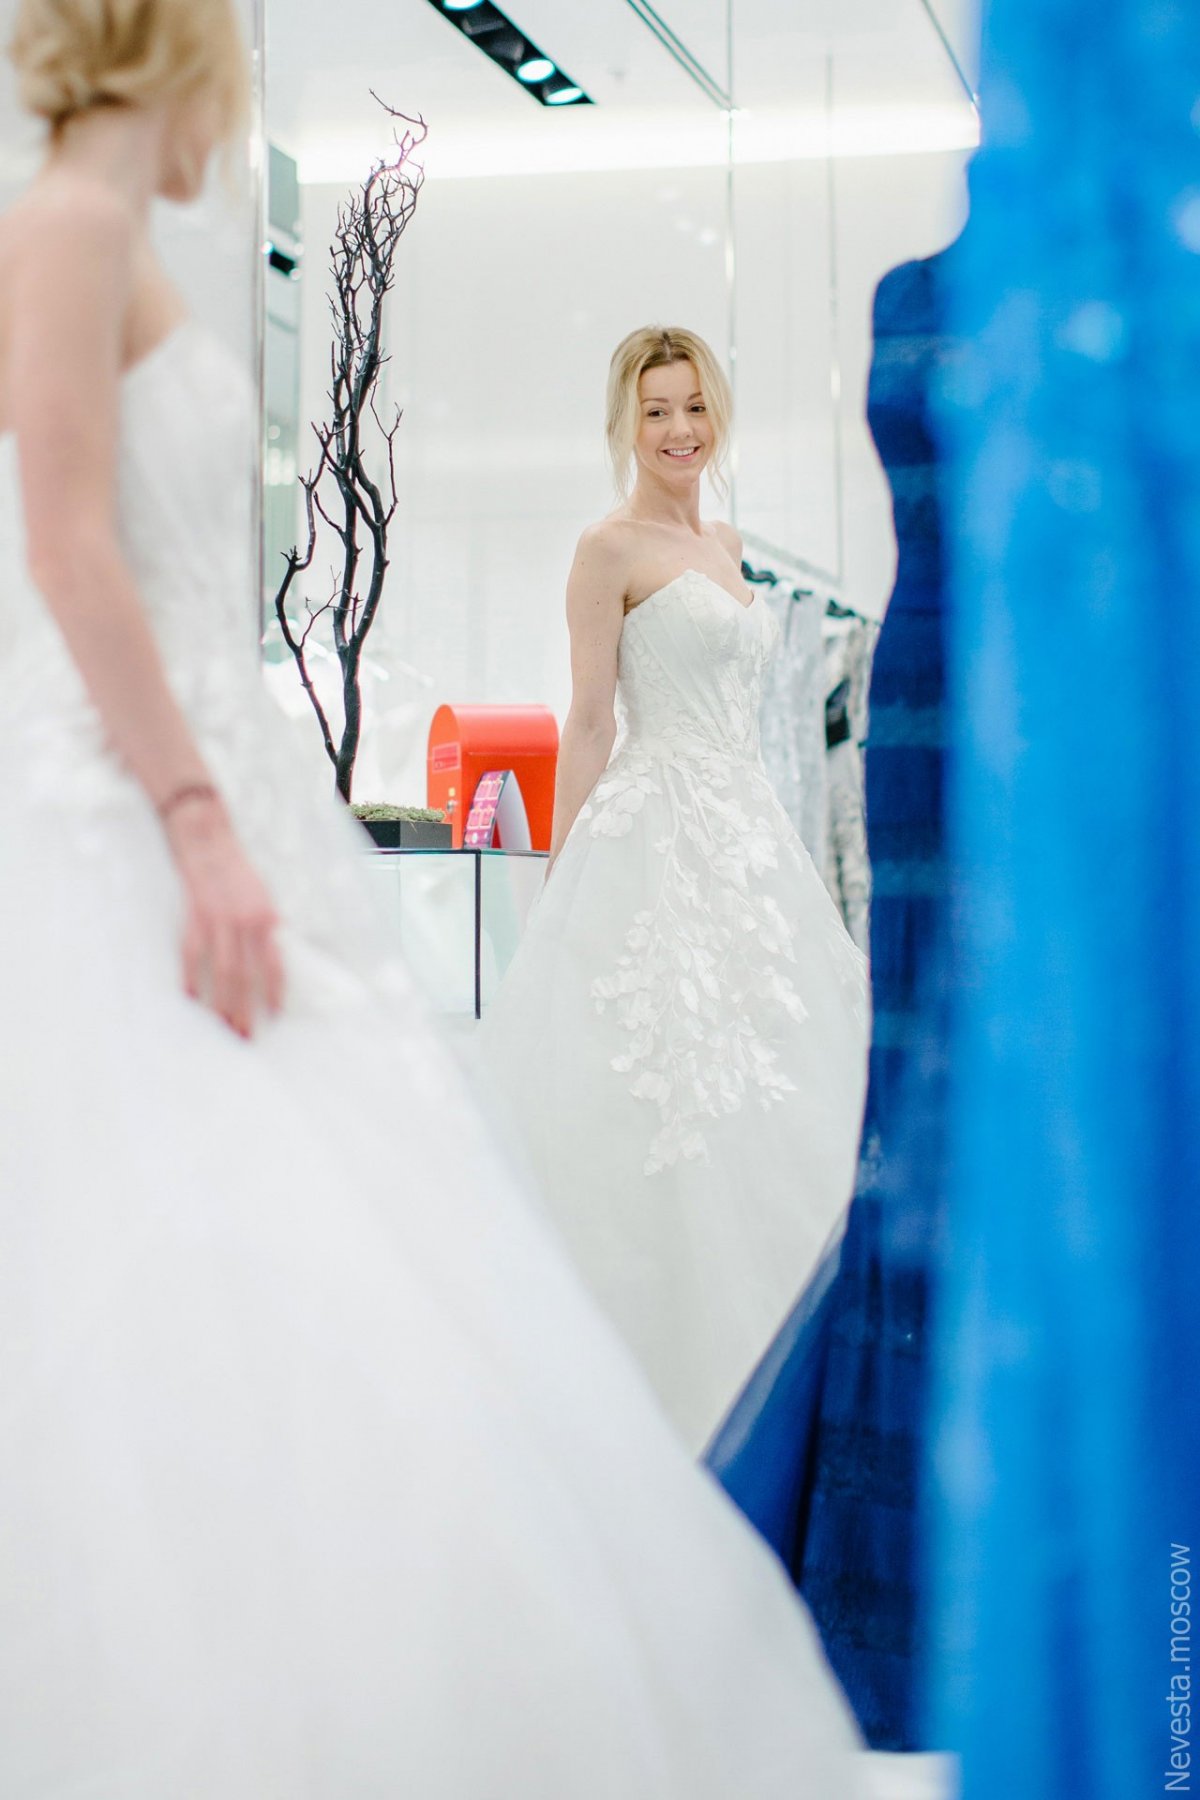 Юлианна Караулова примеряет образ для весенней свадьбы